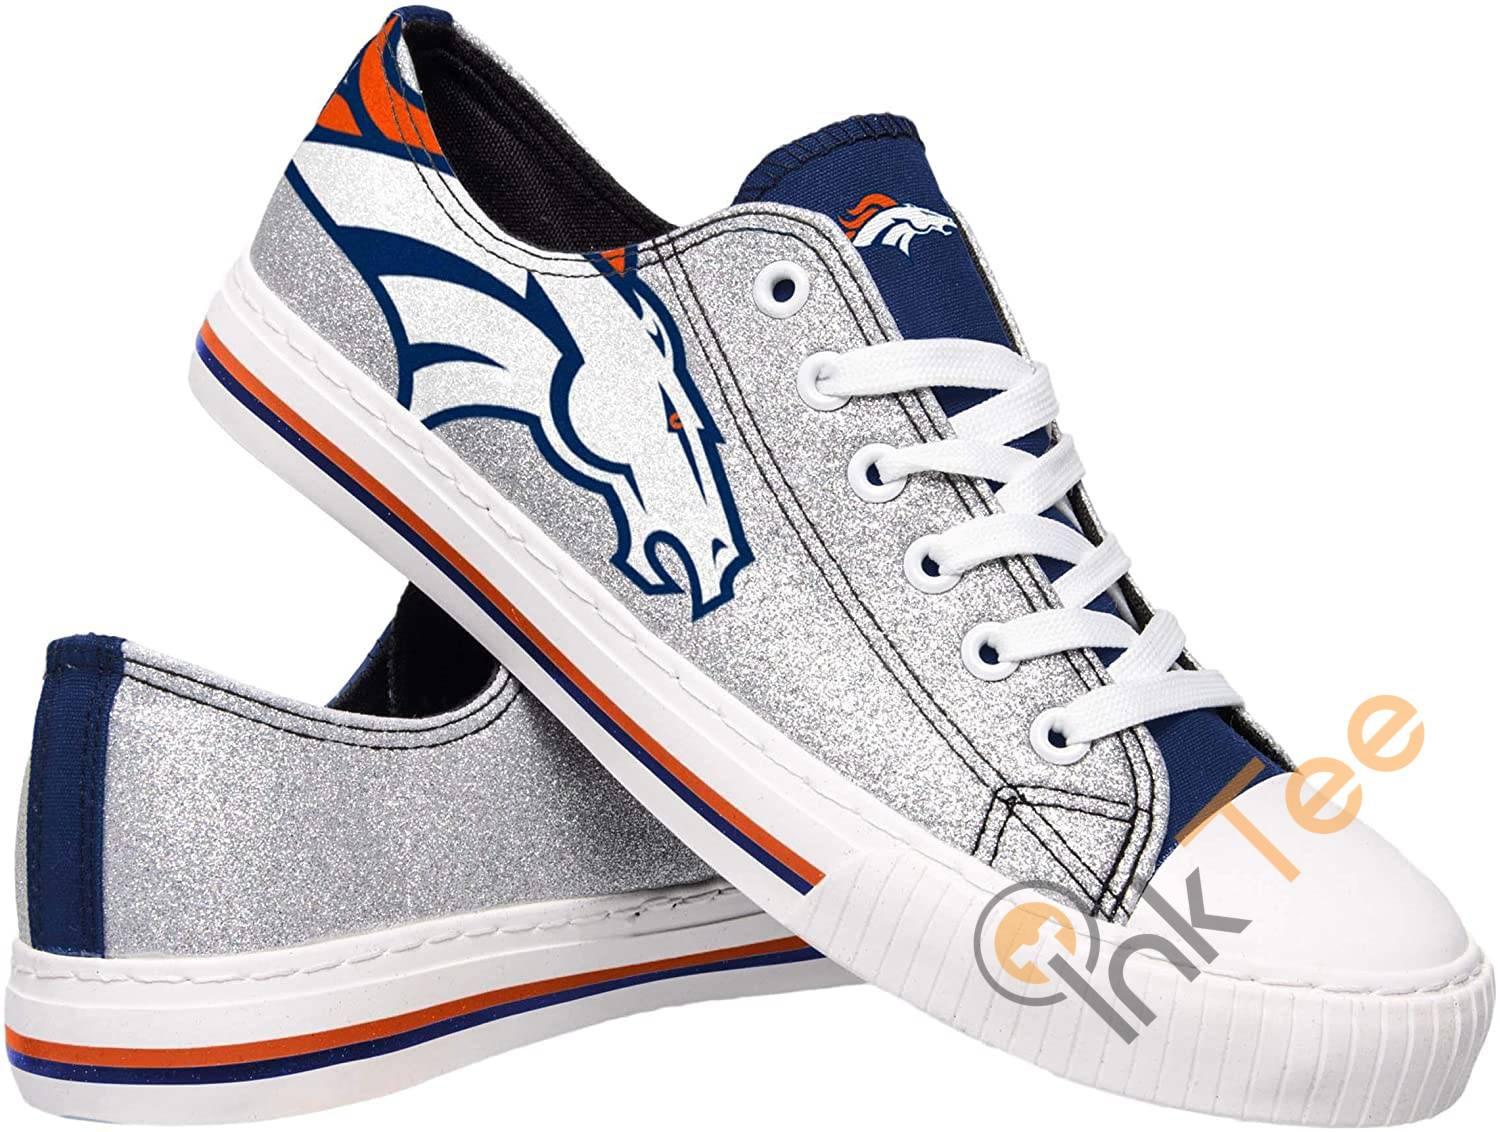 Nfl Denver Broncos Team Low Top Sneakers